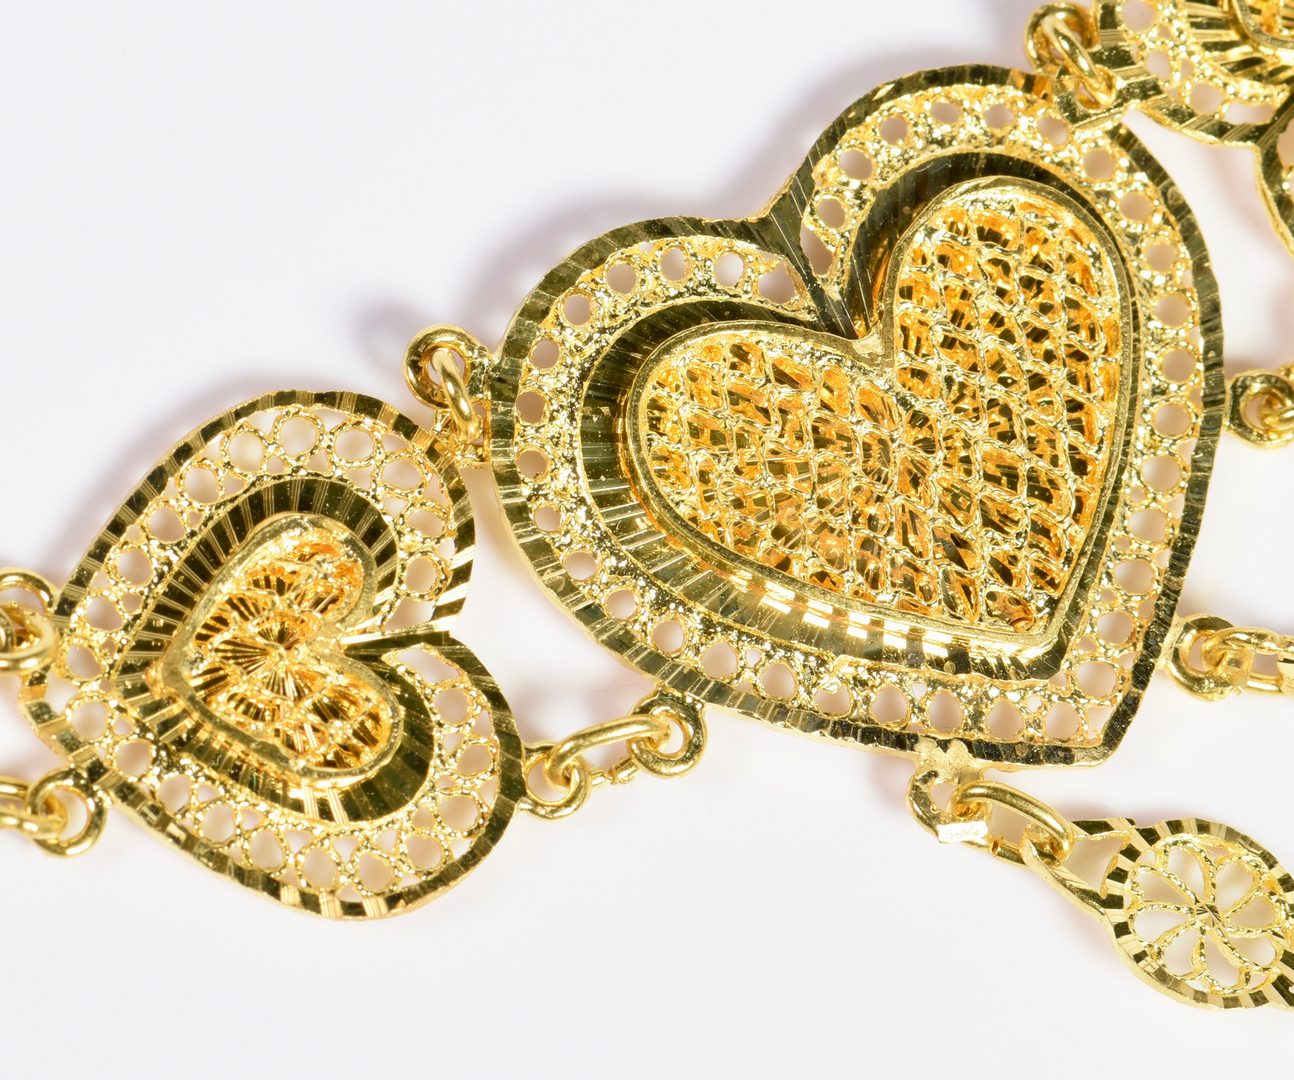 Lot 778: 21K Gold Filigree Heart Jewelry 3-pc Set